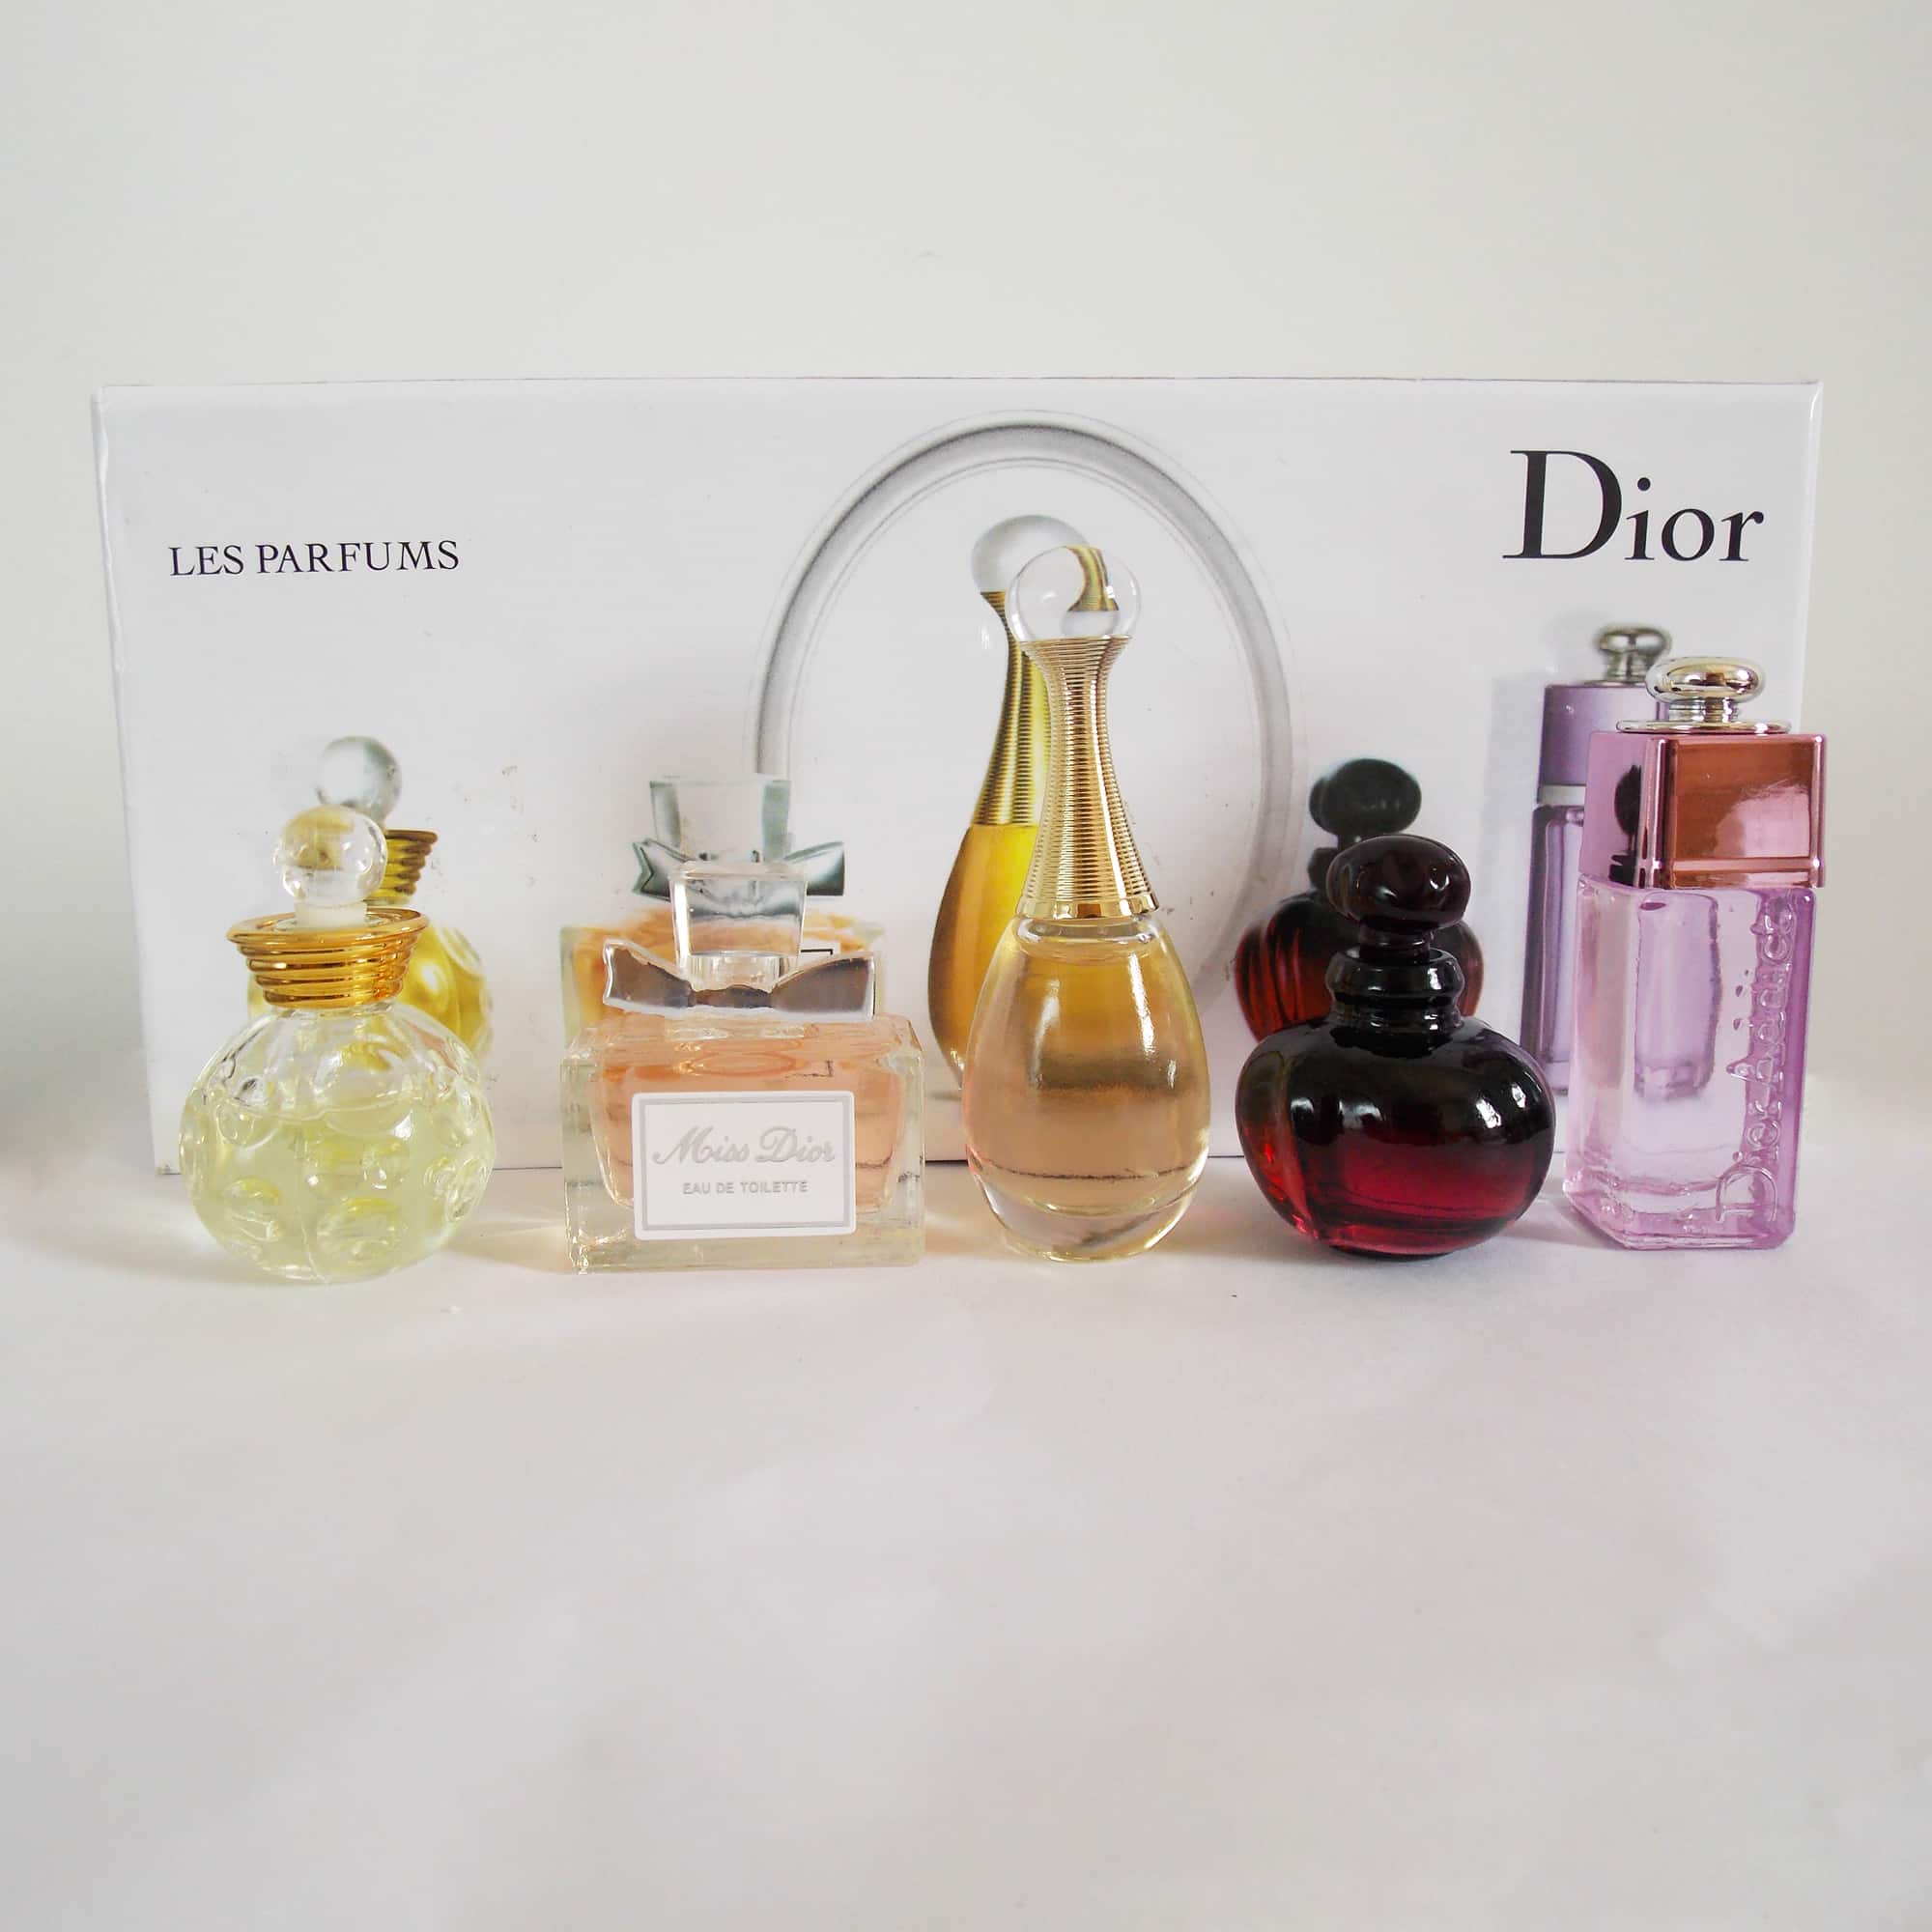 Nước hoa nữ Gift Set Miss Dior 3Pcs  Emmy Cosmetics  Sức Khỏe  Sắc Đẹp